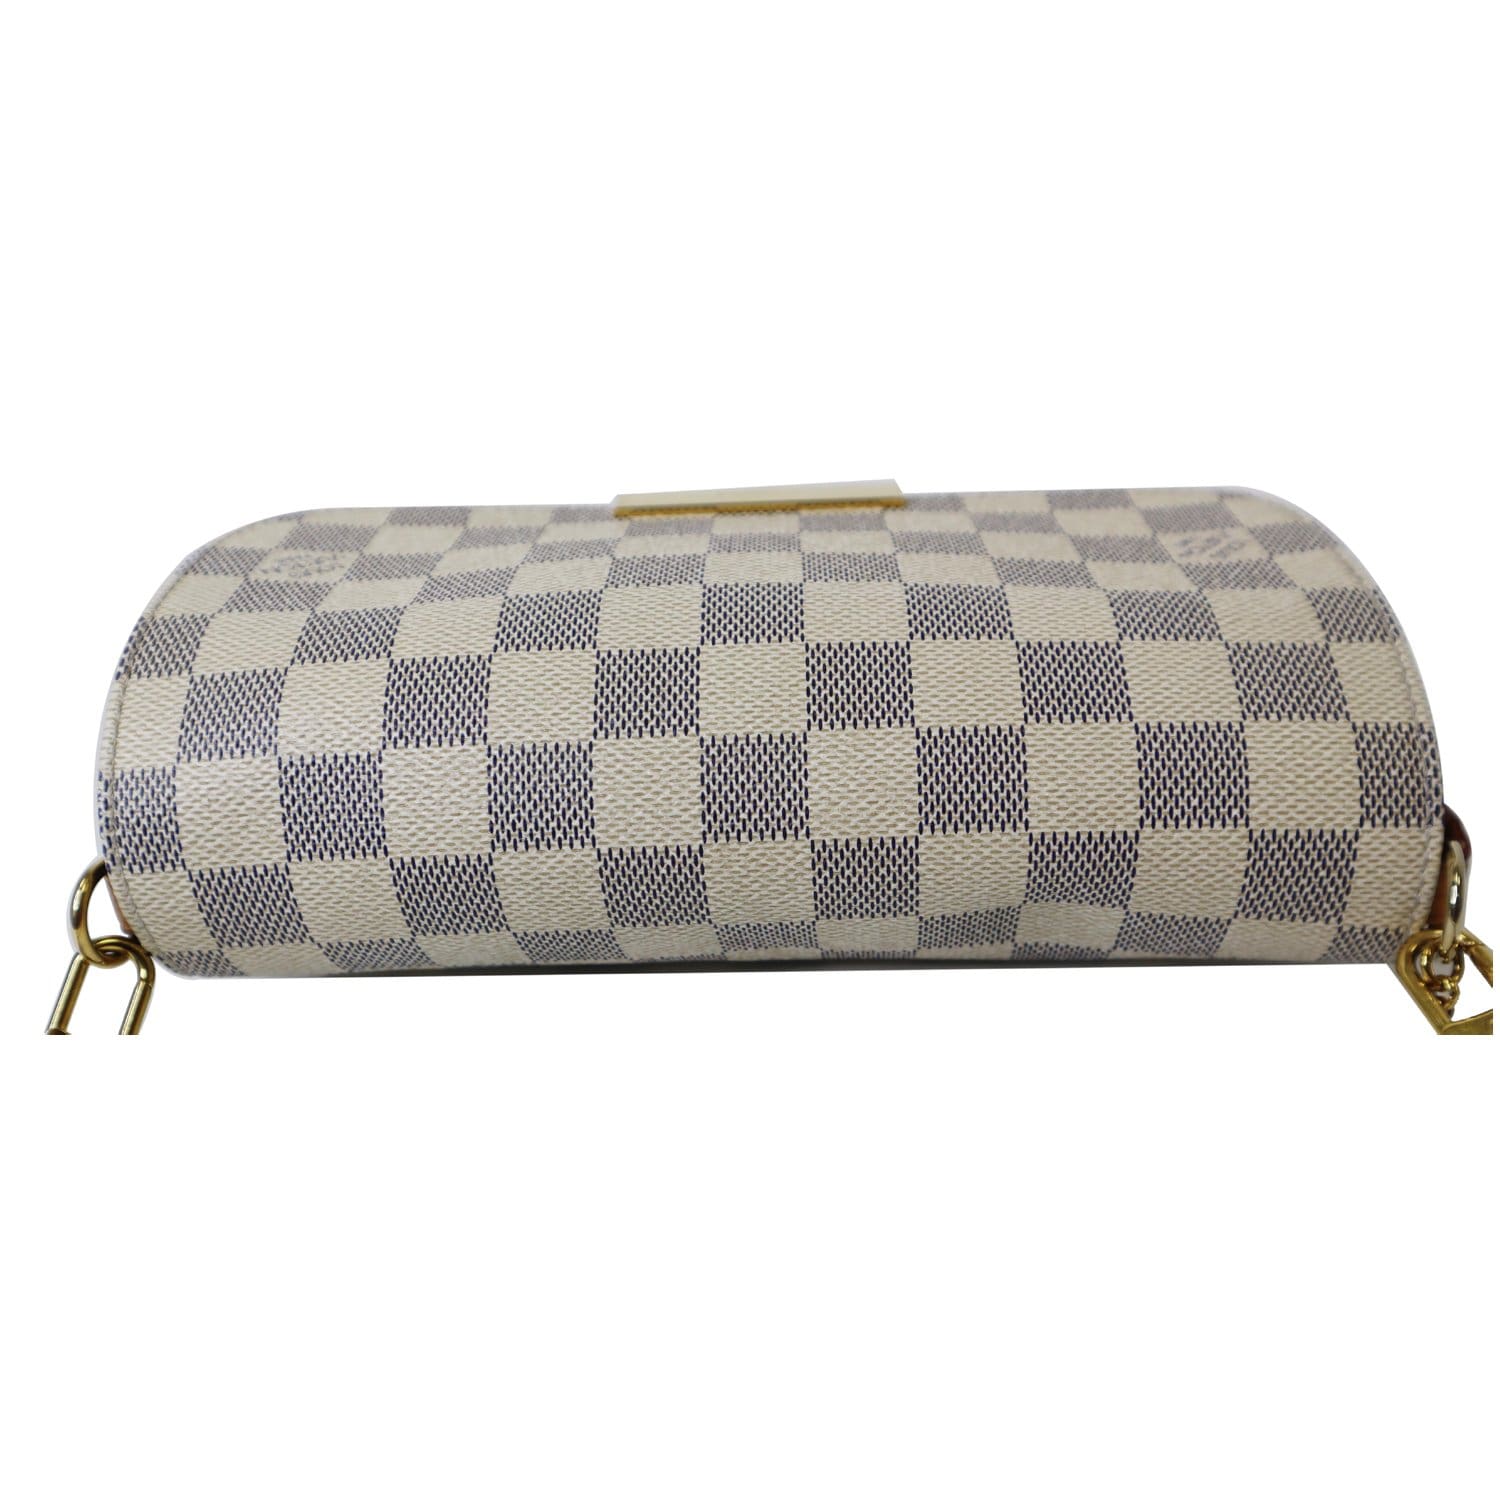 Handbags Louis Vuitton Louis Vuitton Damier Azur Favorit PM Shoulder Bag 2way N41277 LV Auth 49499